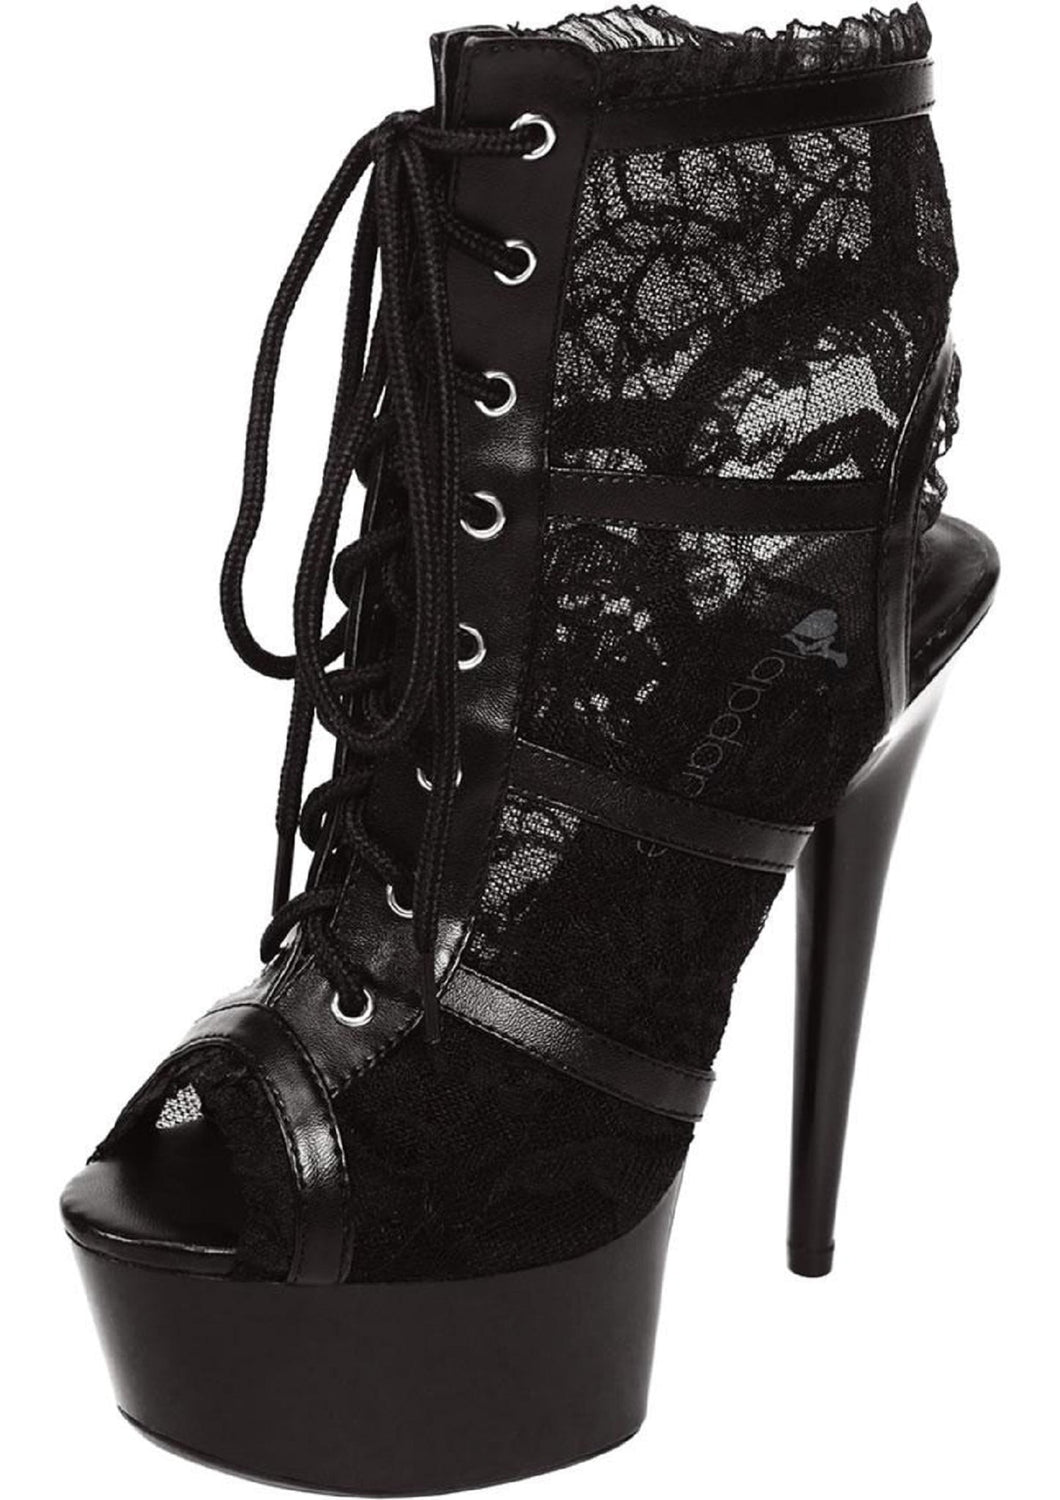 Black Lace Open Toe Platform Ankle Bootie 6in Heel. - Beautiful Stranger 2020